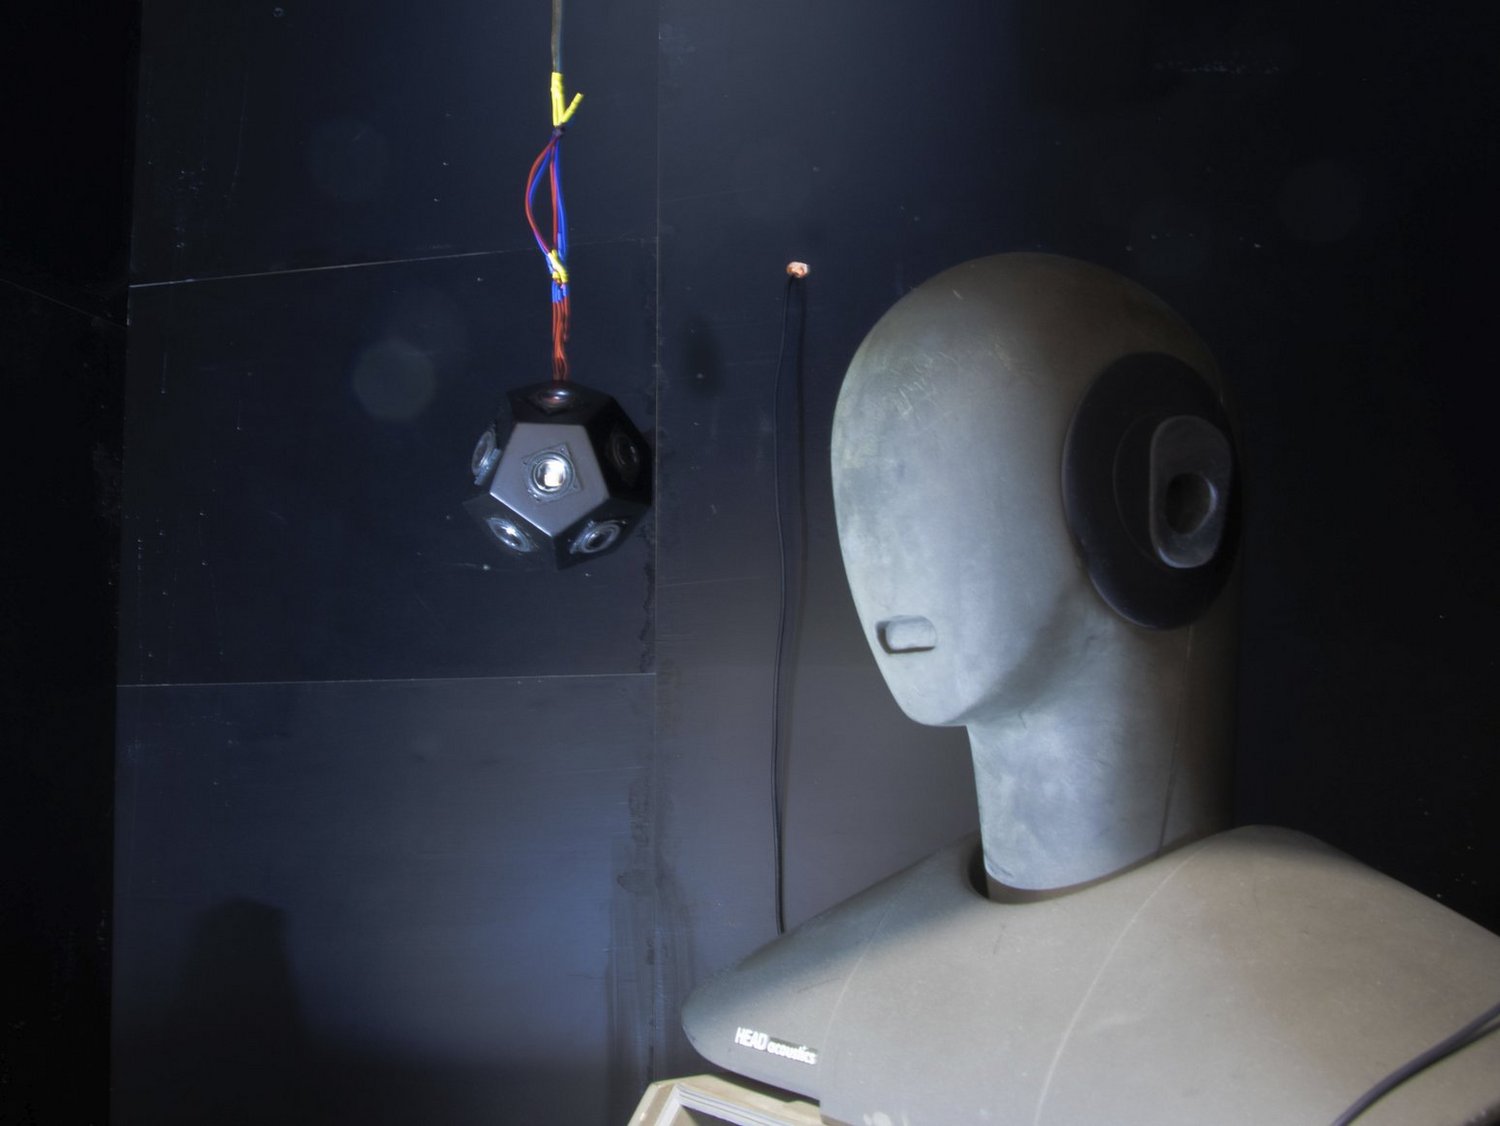 Akustik-Messkopf und abgehängtem Dodekaeder-Lautsprecher in schwarzer schalltoter Kammer